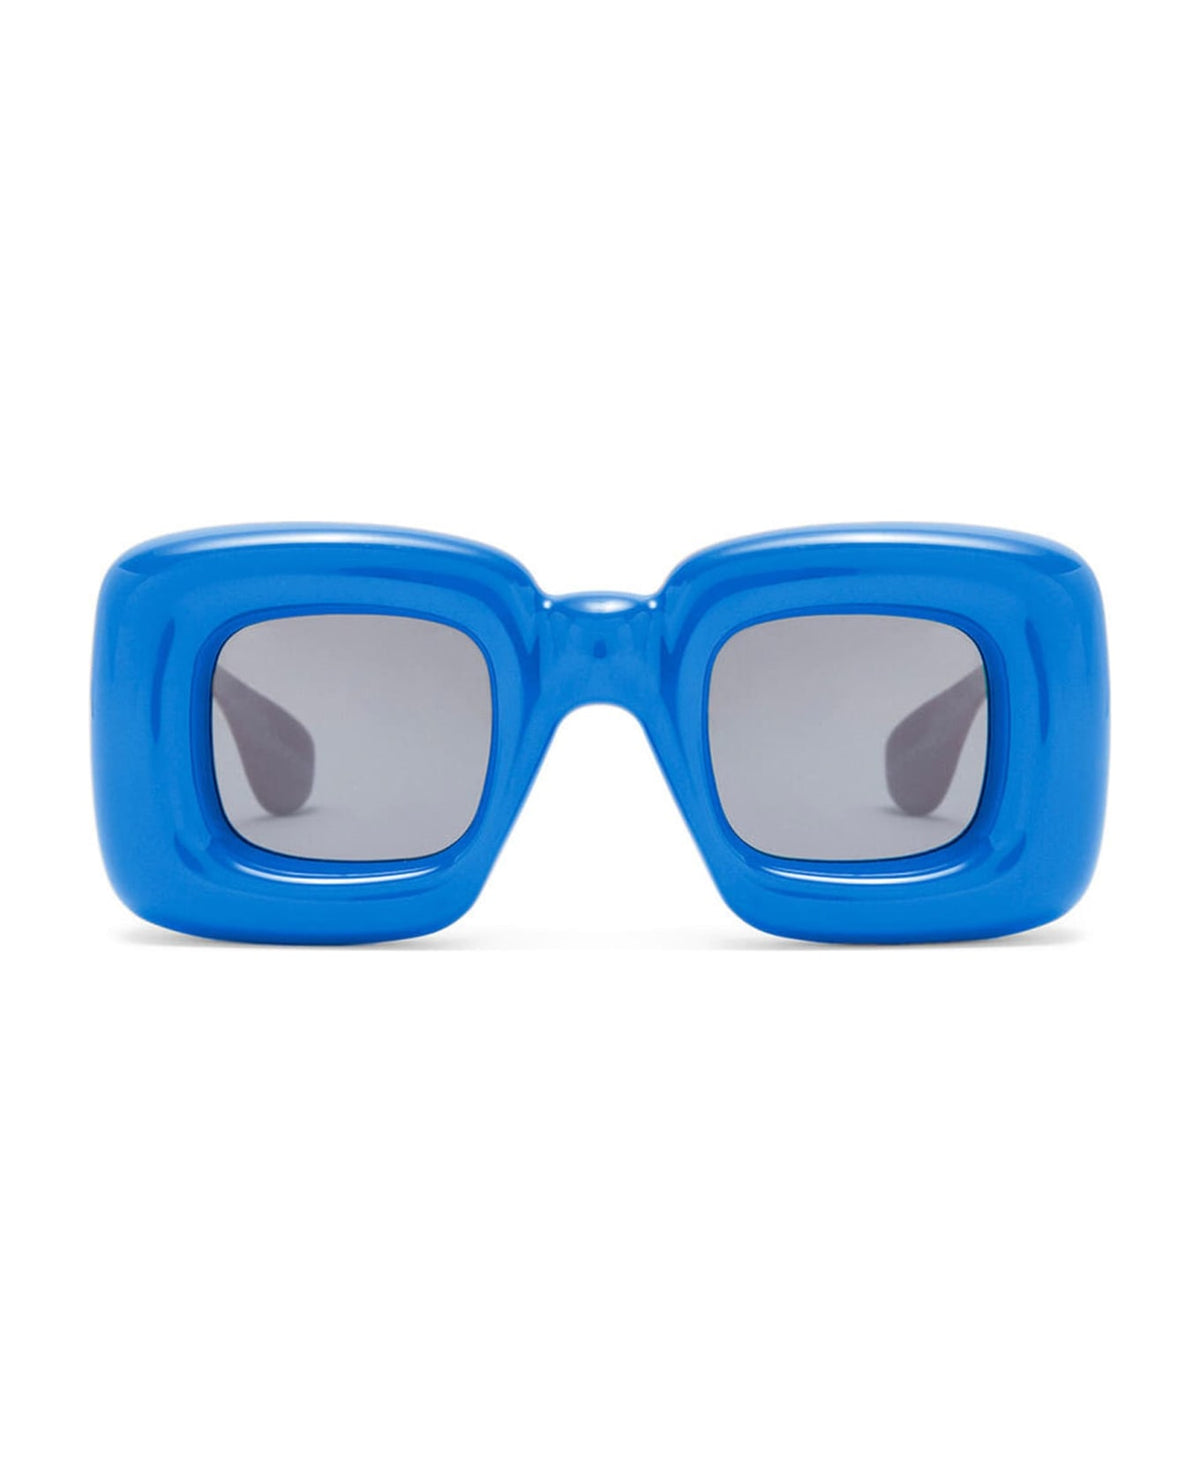 Lw40098i - Ink Blue Sunglasses